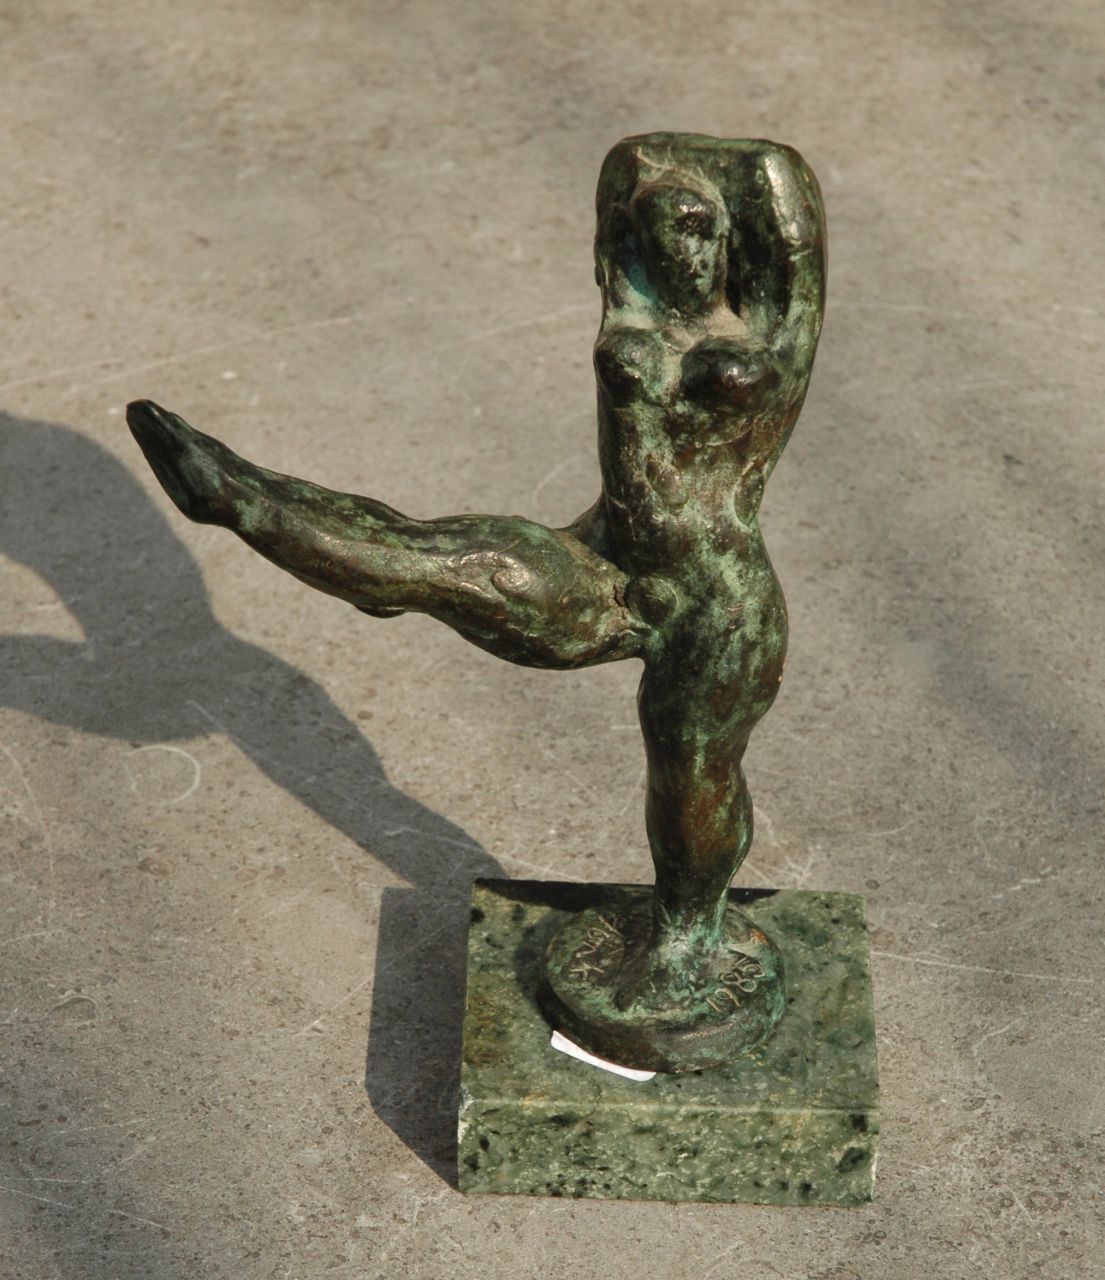 Jonk N.  | Nicolaas 'Nic' Jonk, Danseres met gestrekt been, brons 15,0 x 9,5 cm, gesigneerd op bronzen basis en gedateerd 1985